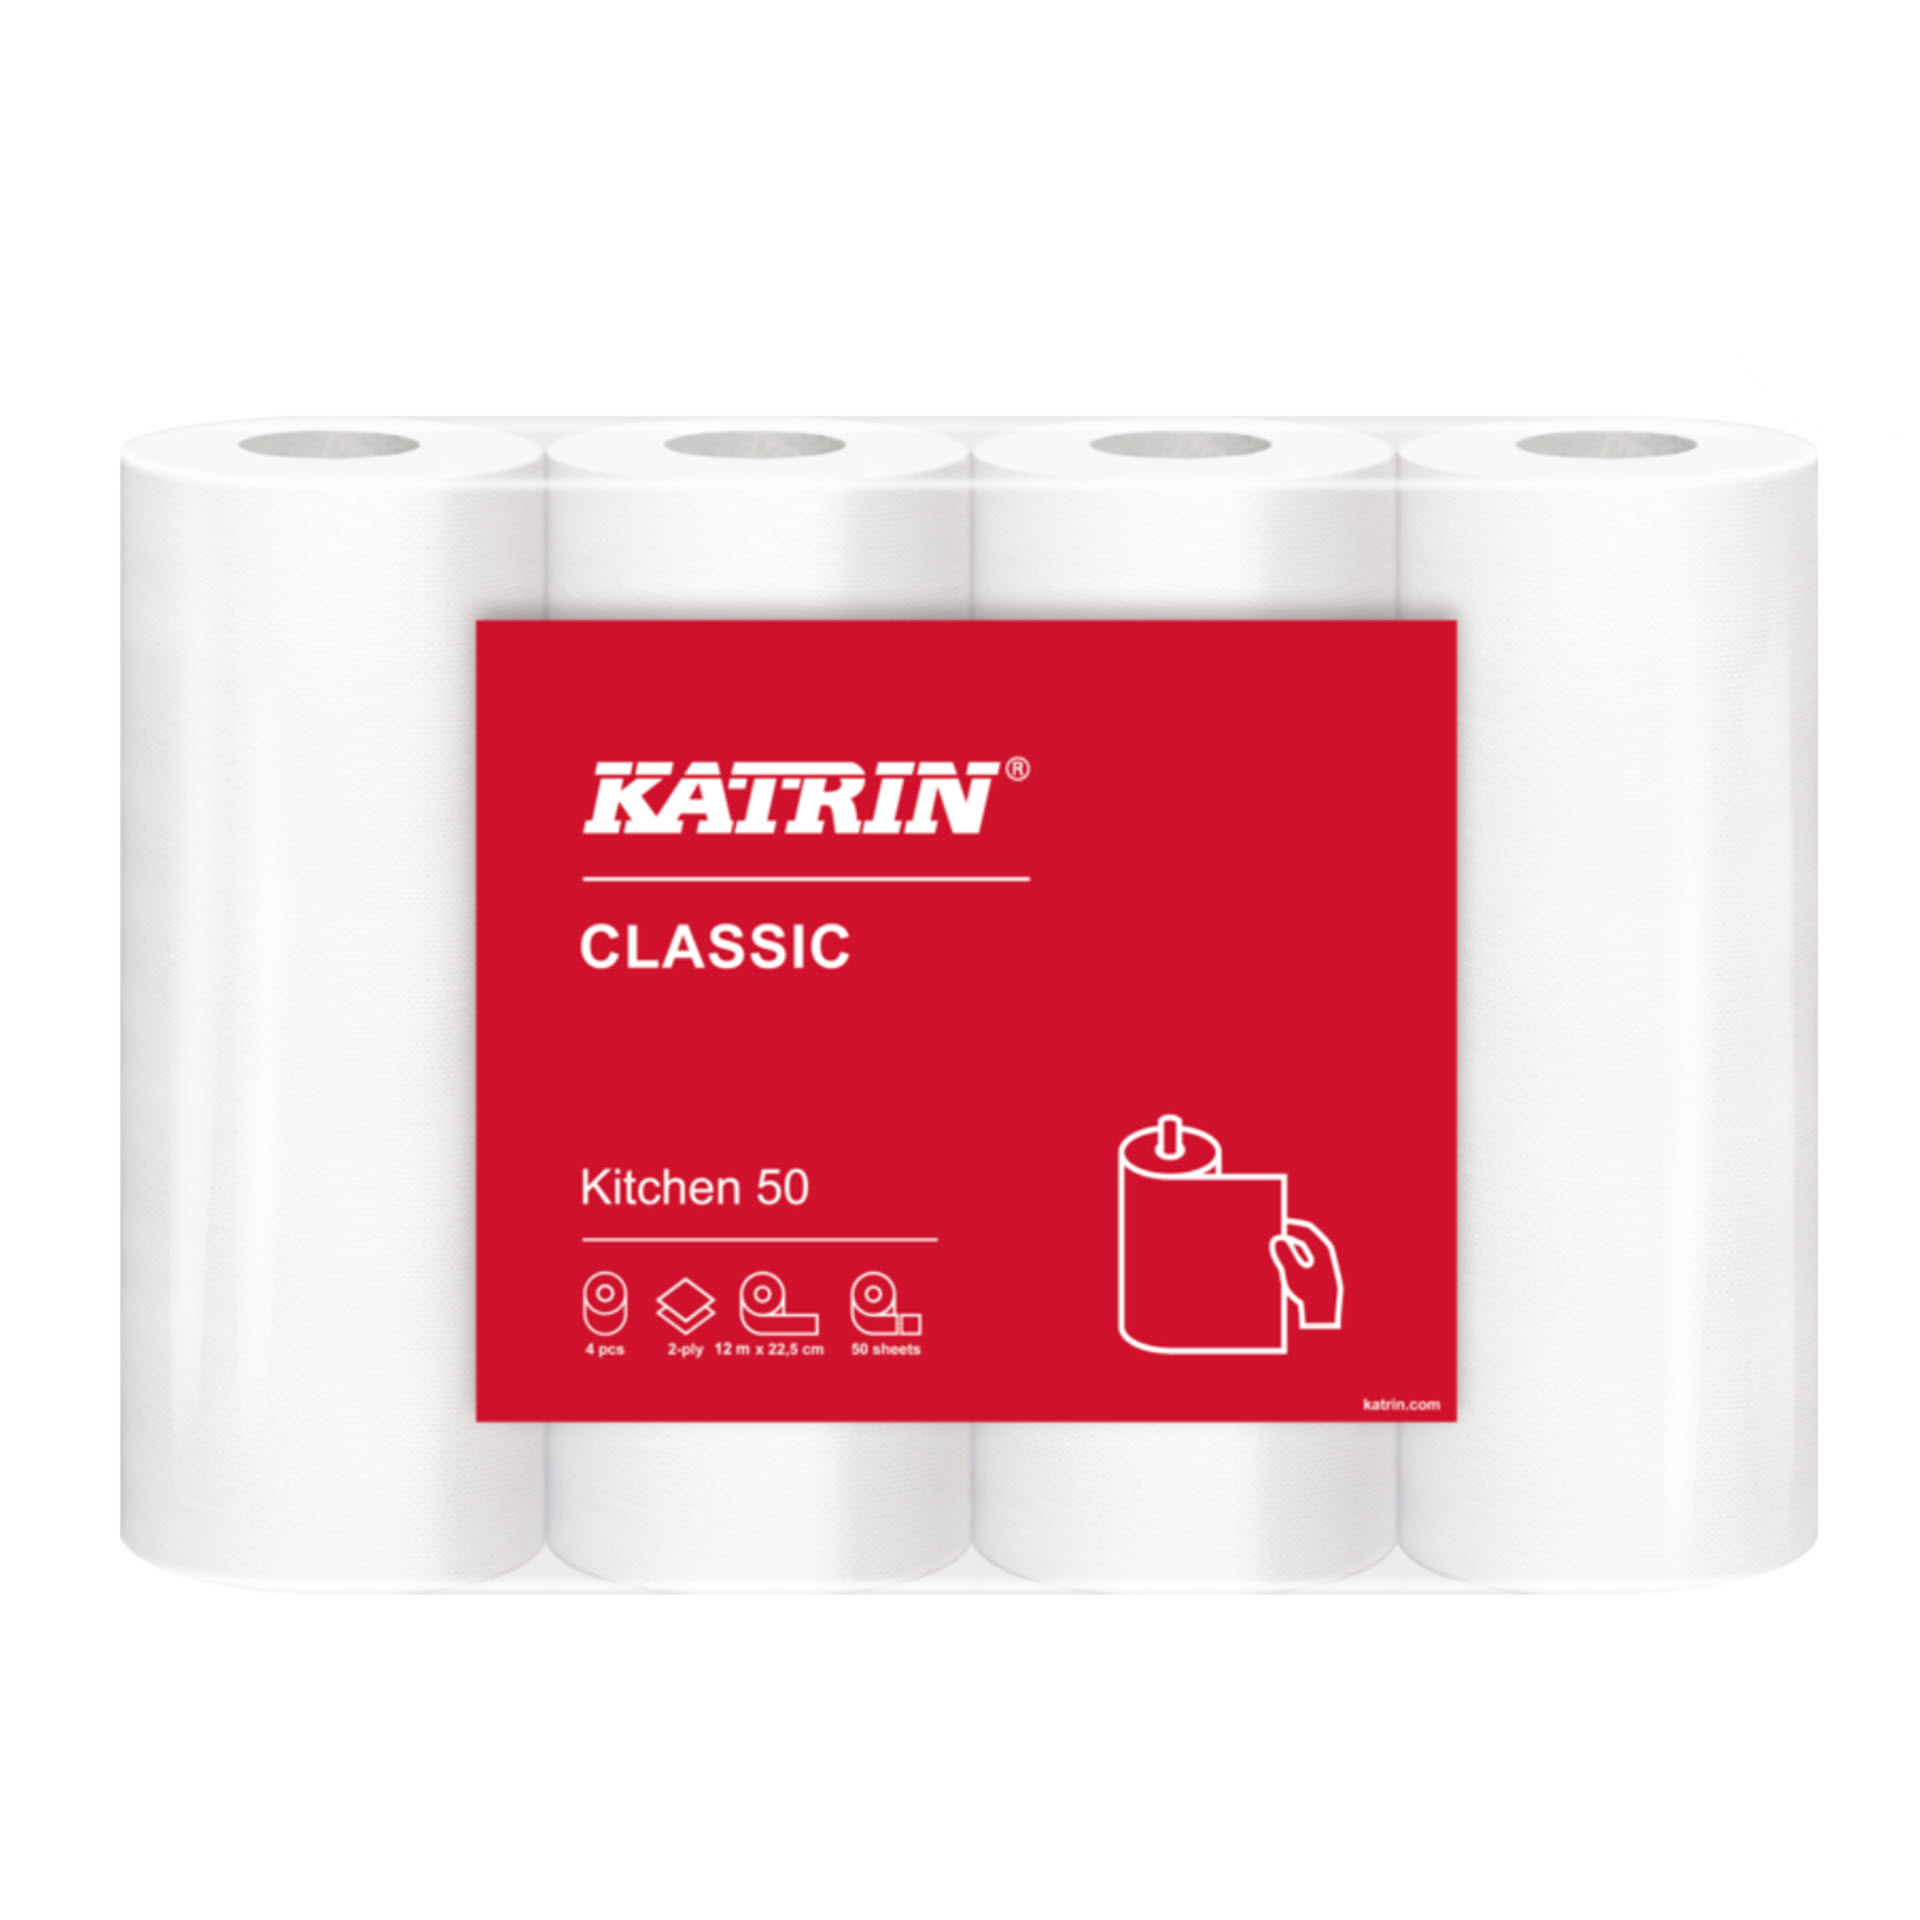 Katrin Classic Kitchen 50 - Küchenrollen - 2-lagig weiß